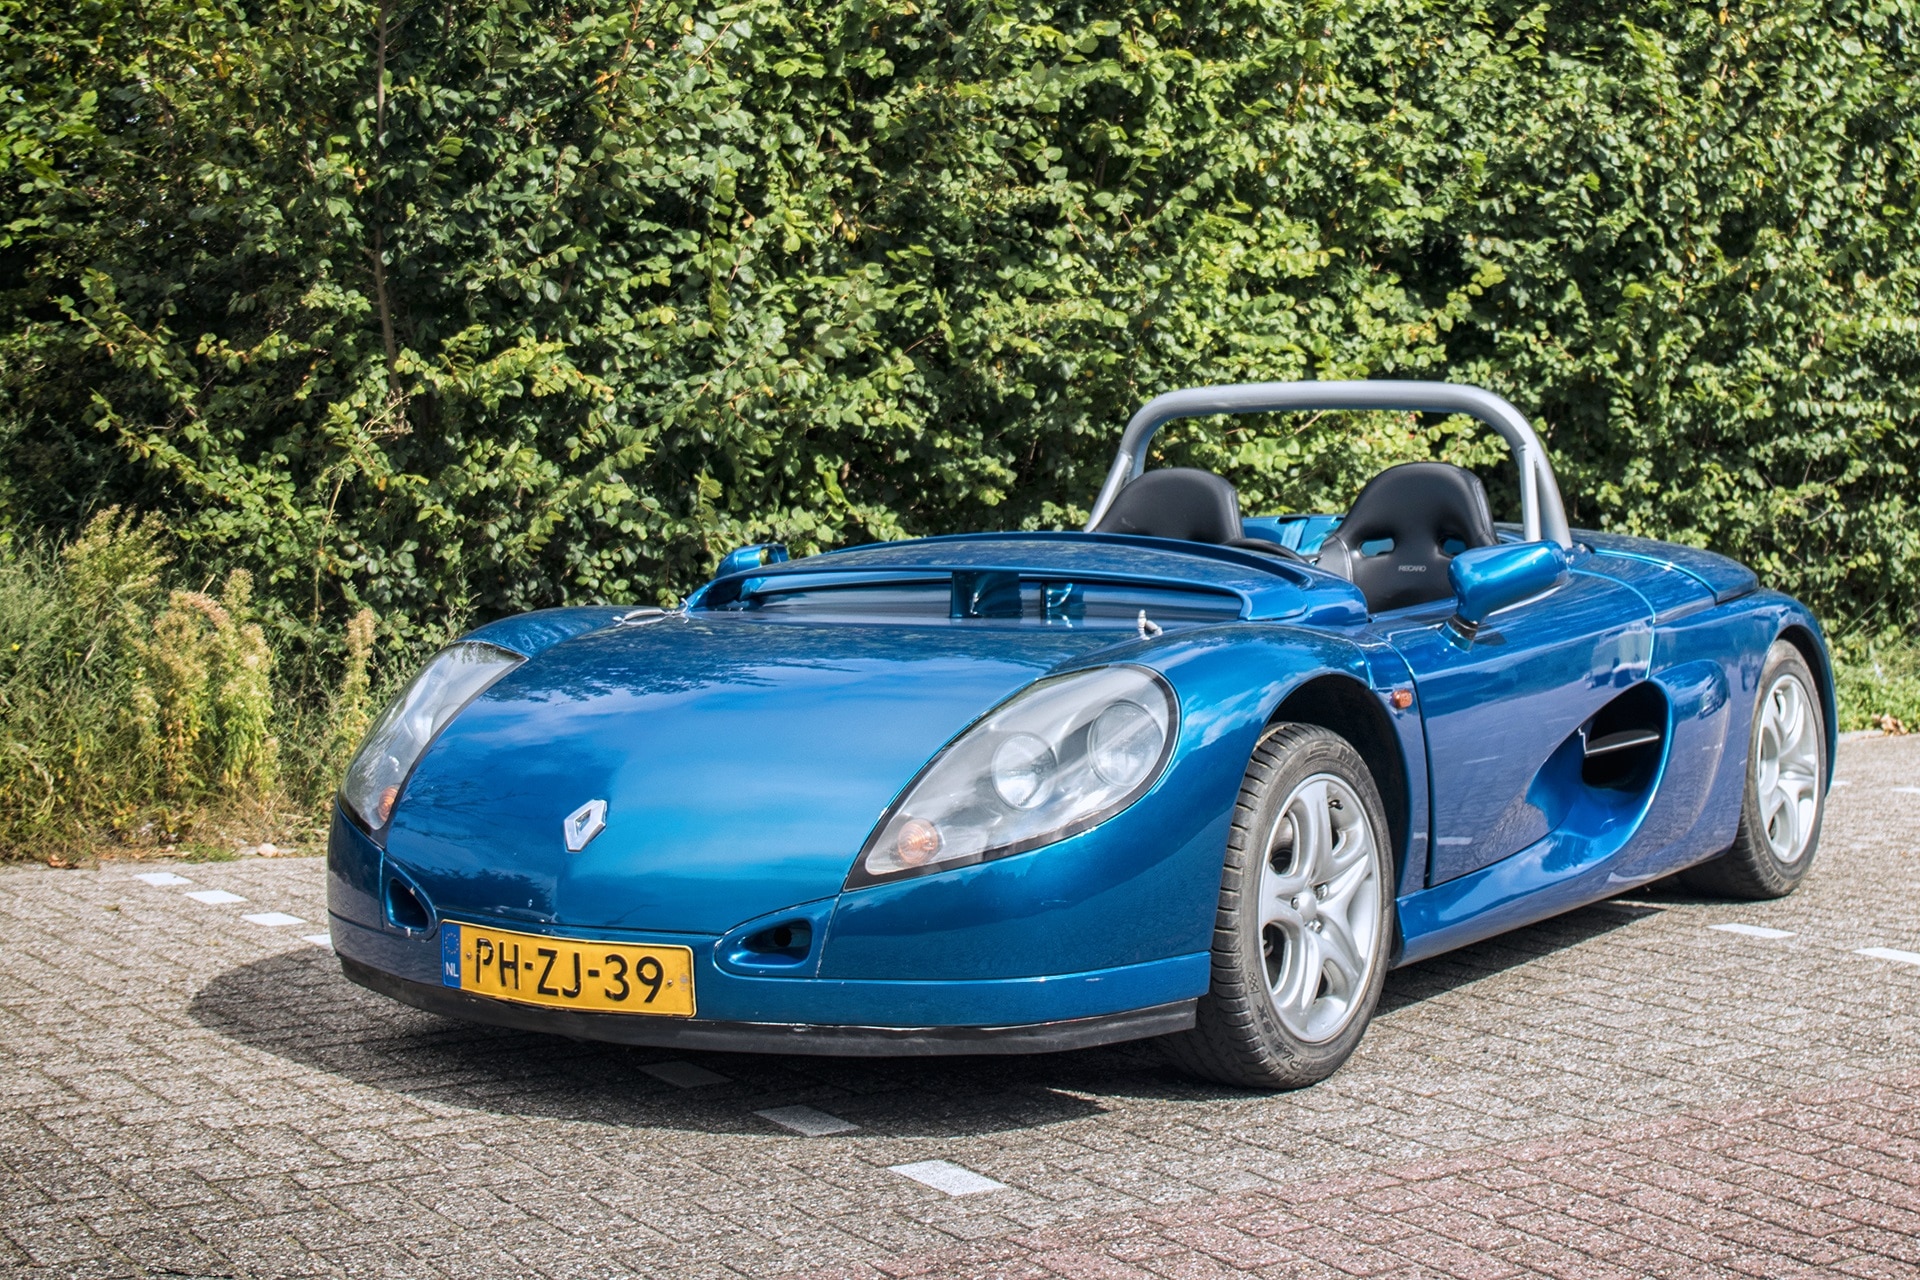 Blauwe Renault Sport Spider uit 1996 op een parkeerplaats